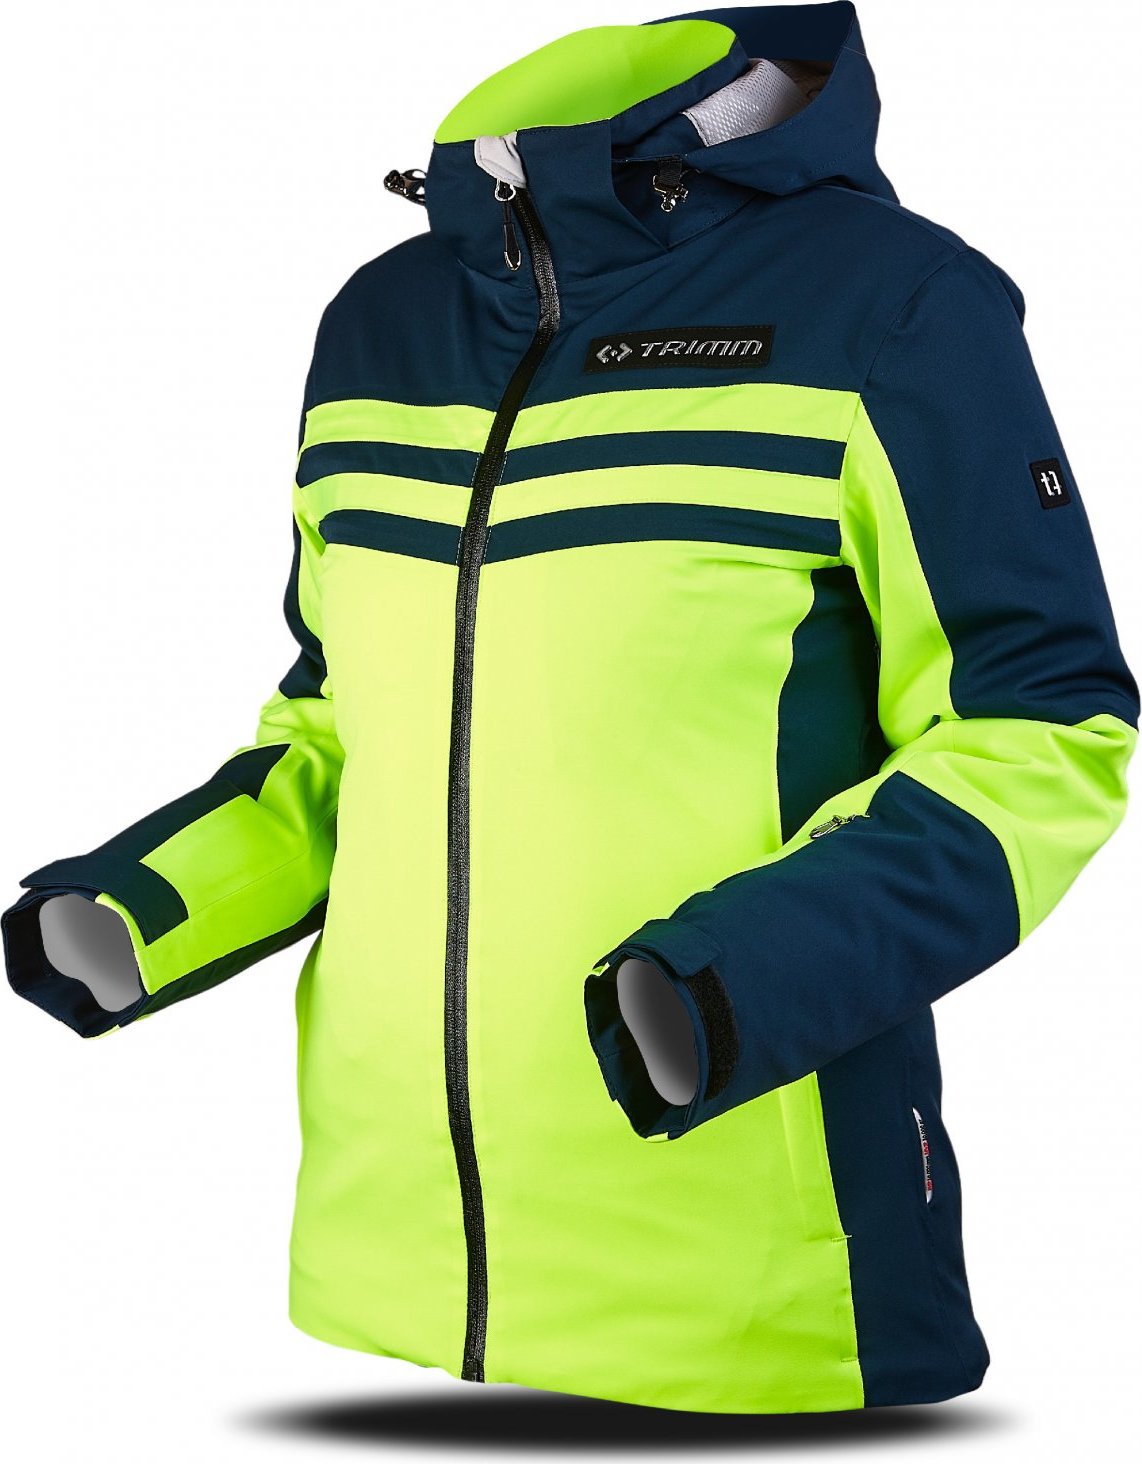 Dámská lyžařská bunda TRIMM Ilusion zelená/tmavě modrá Velikost: M, Barva: lemon/dark lagoon